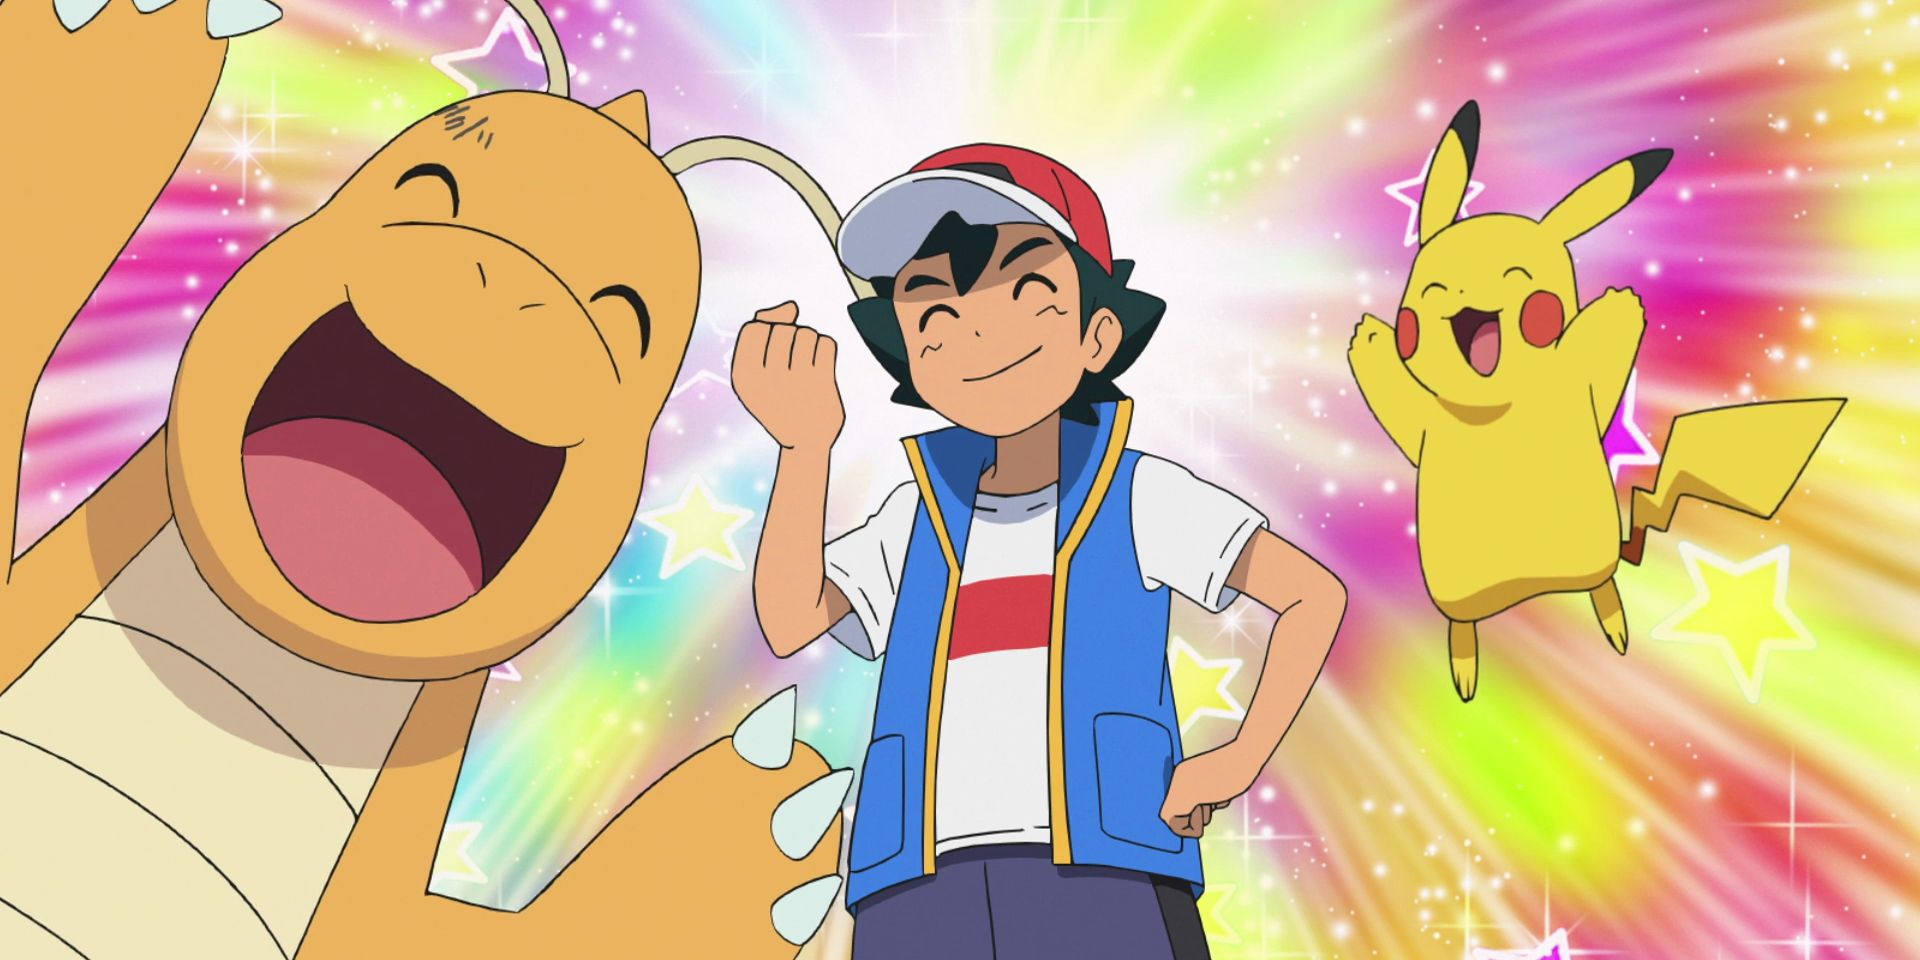 Ash, Pikachu and Dragonite celebrating in the Pokemon anime